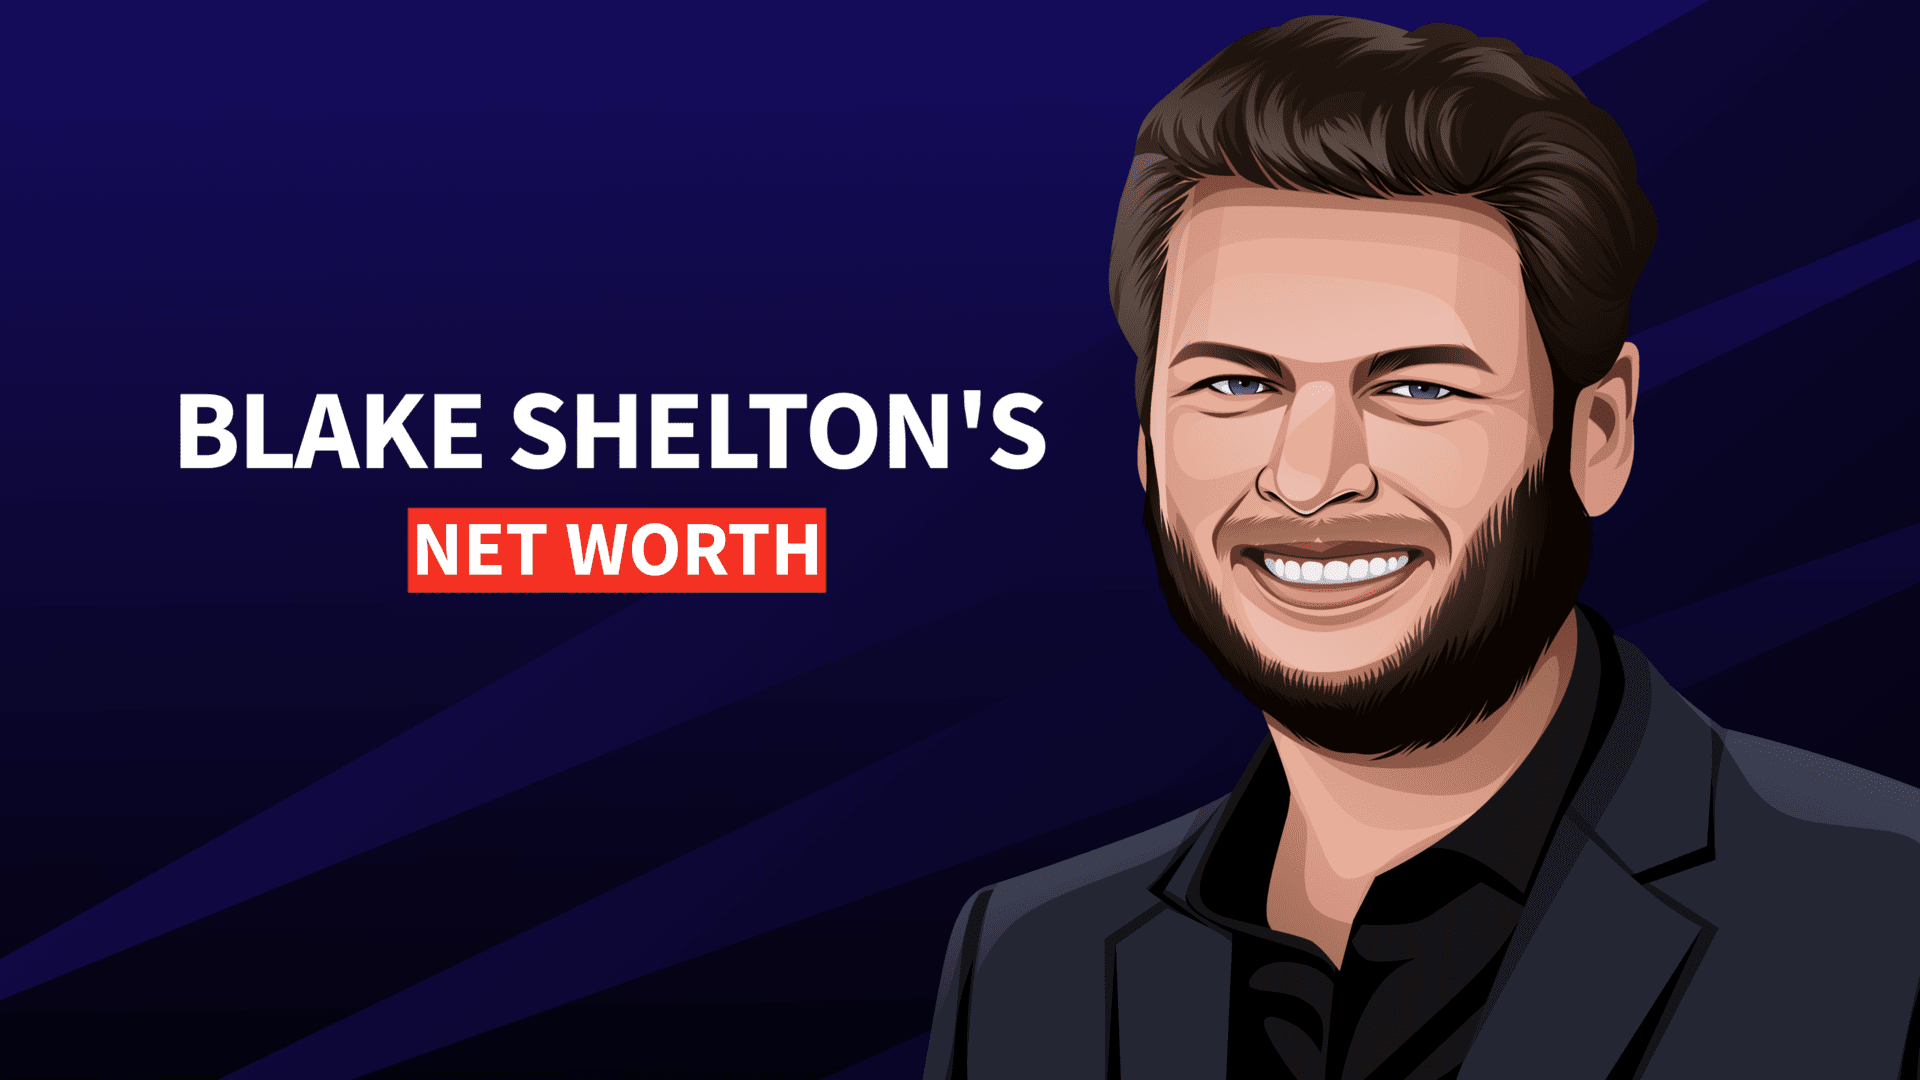 Blake Shelton's Net Worth and Story